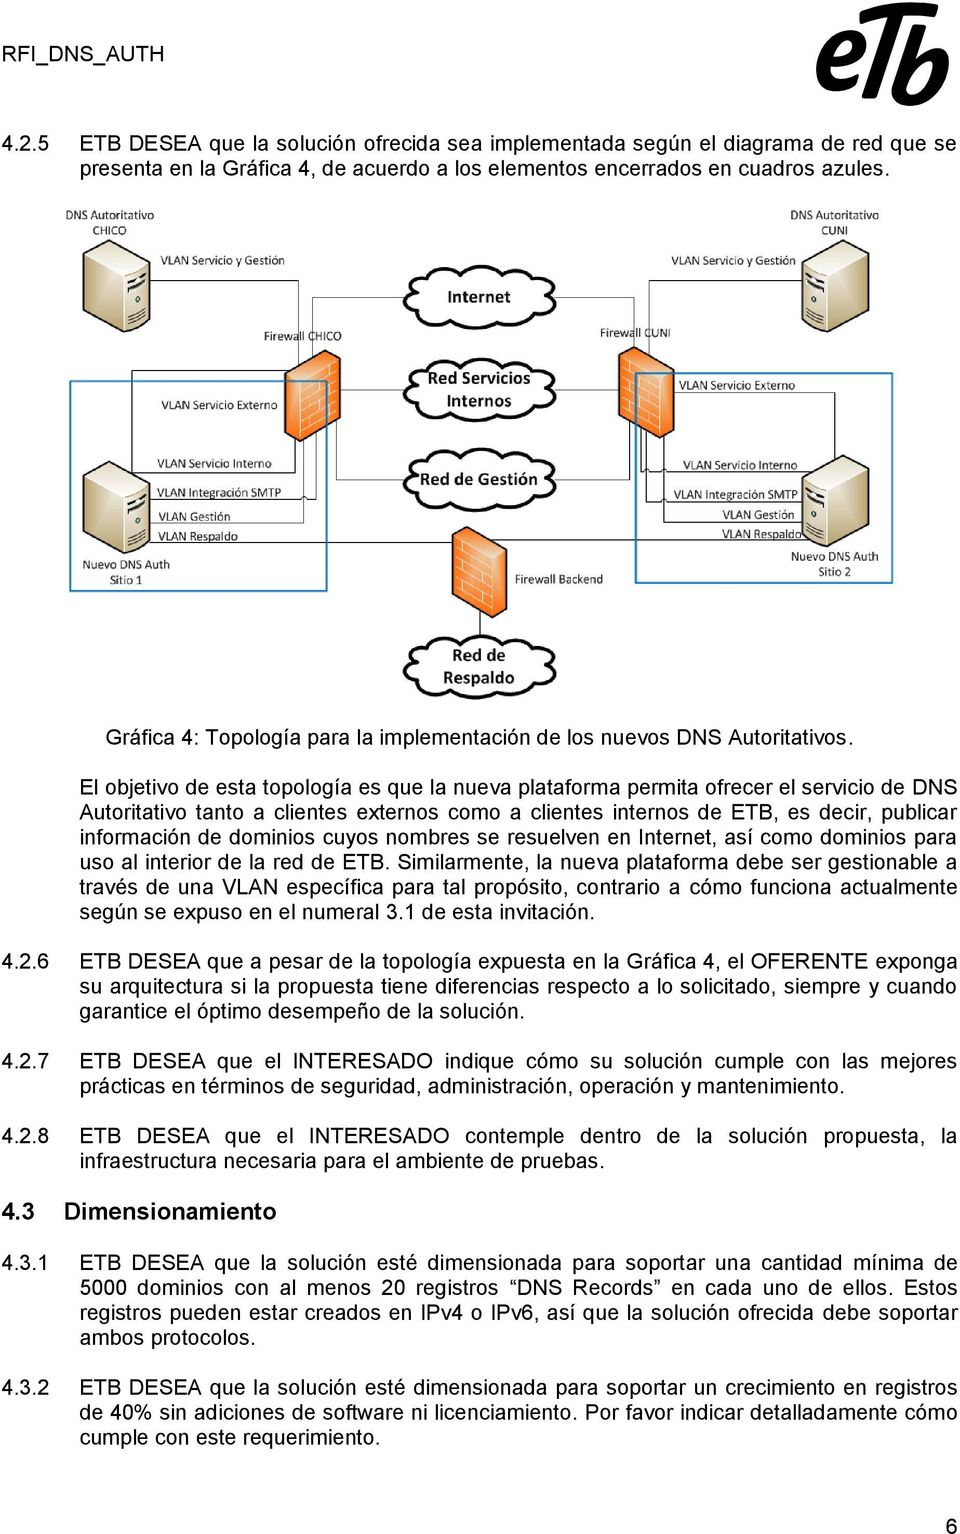 El objetivo de esta topología es que la nueva plataforma permita ofrecer el servicio de DNS Autoritativo tanto a clientes externos como a clientes internos de ETB, es decir, publicar información de